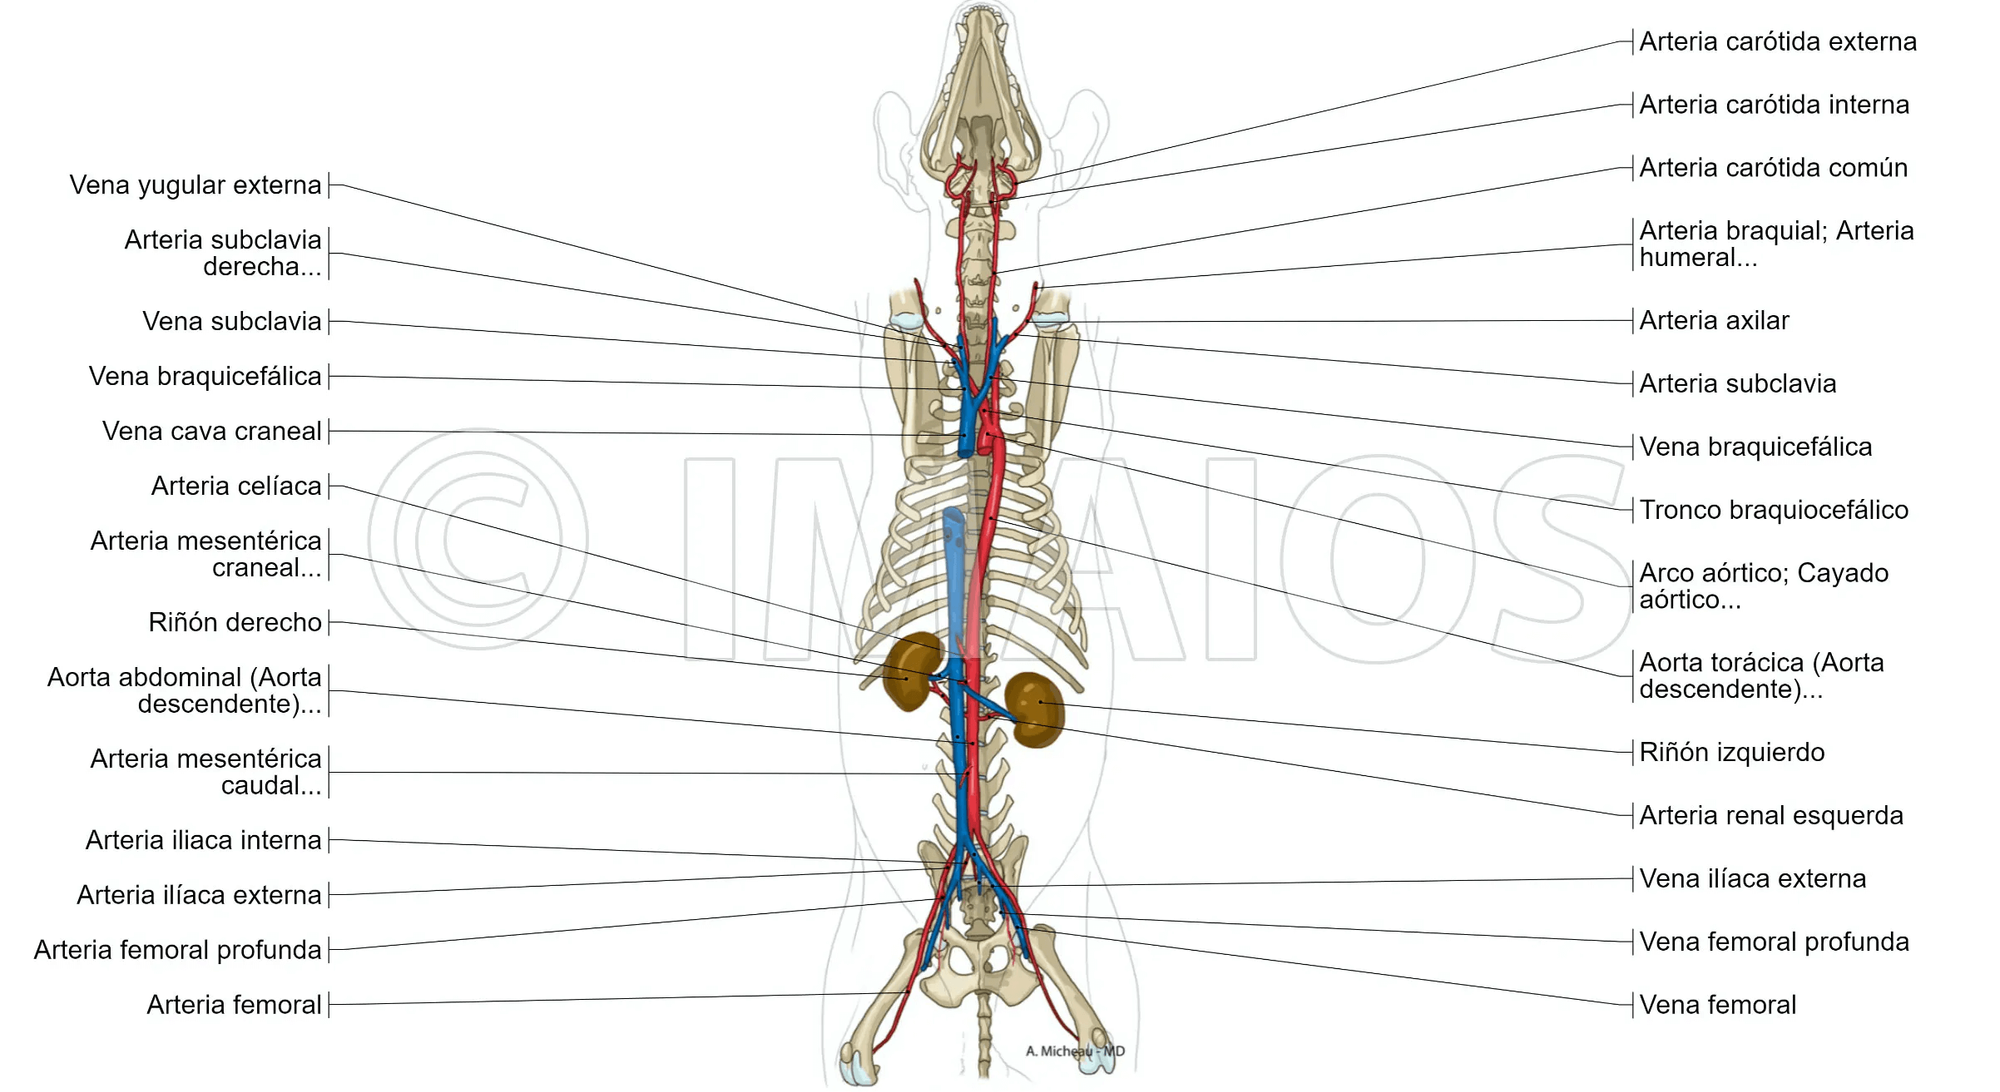 Atlas de anatomía con etiquetas: ilustraciones de un perro